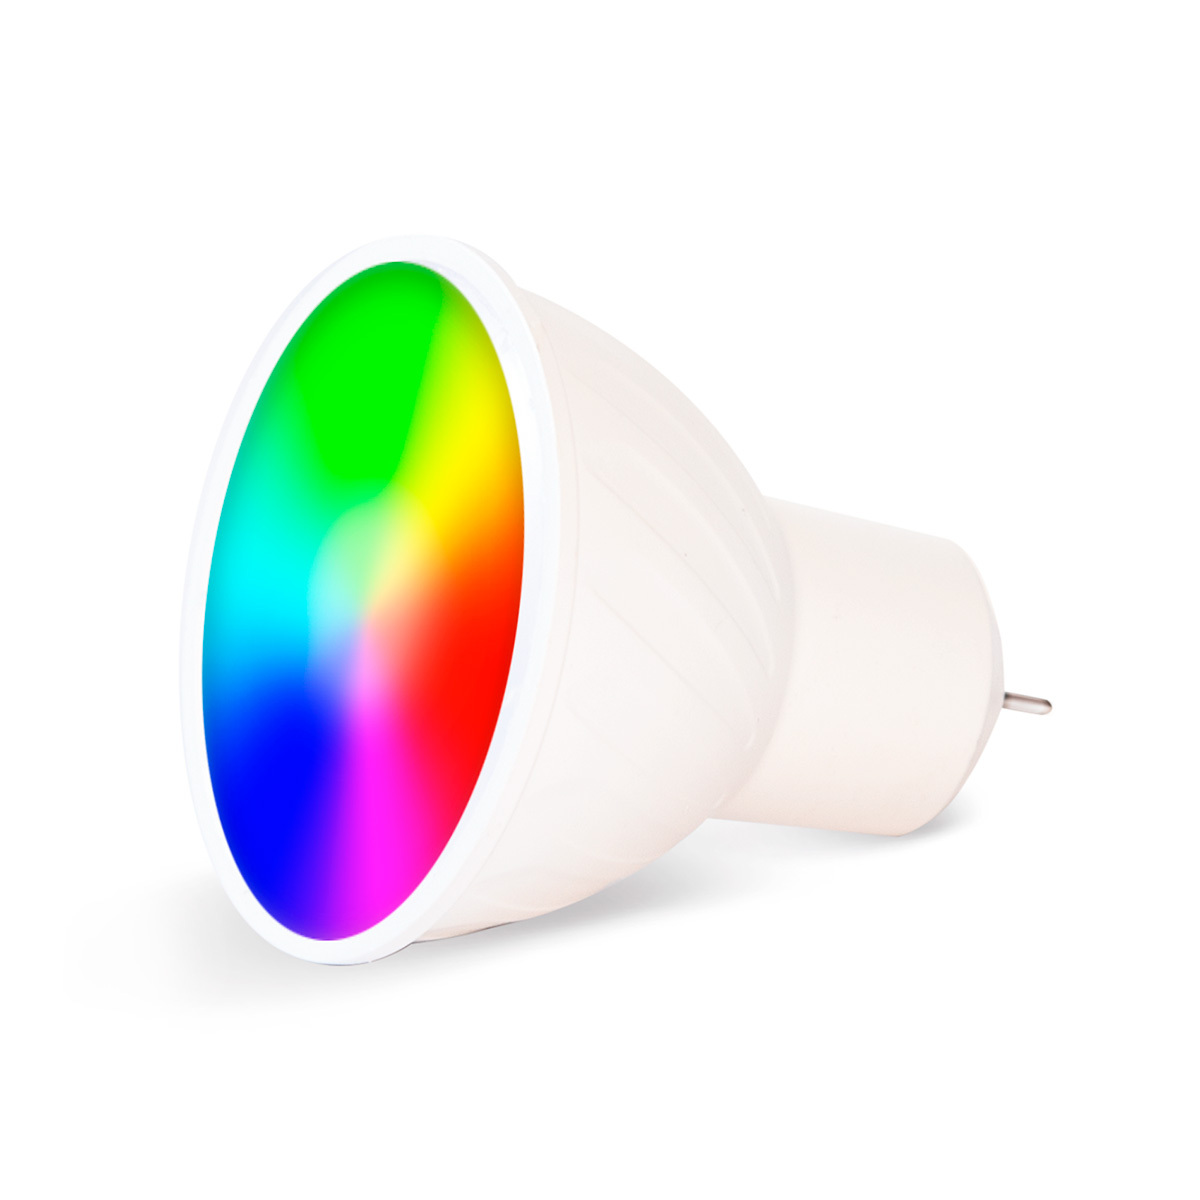 LLOYD´S - Bombilla WiFi Smart A19, multicolor + rango de luz blanca (b –  Digvice